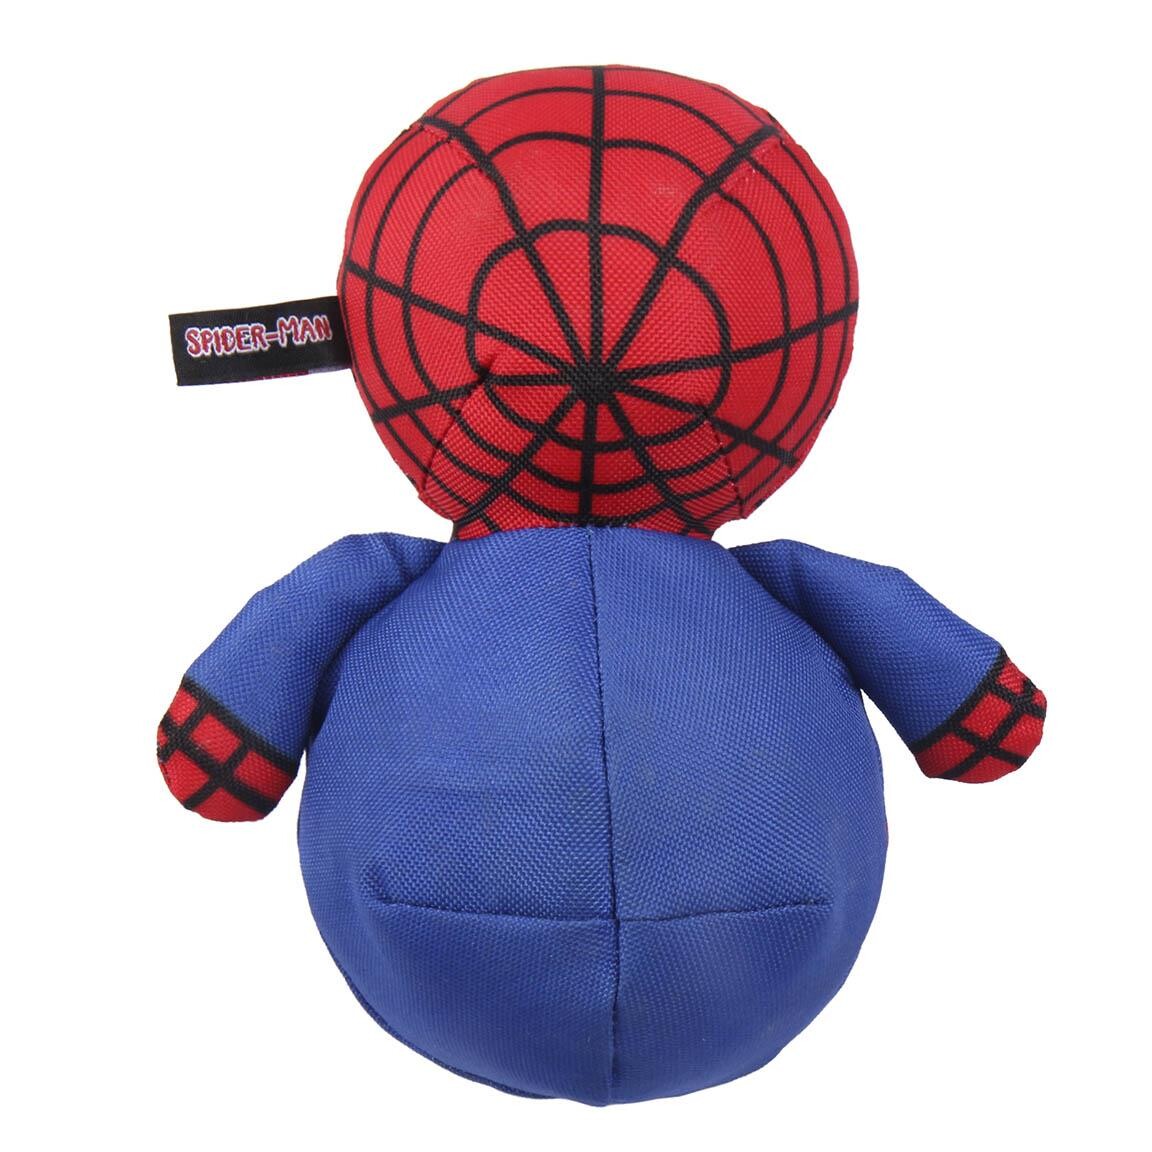 Pantoufles Spider-Man en livraison gratuite